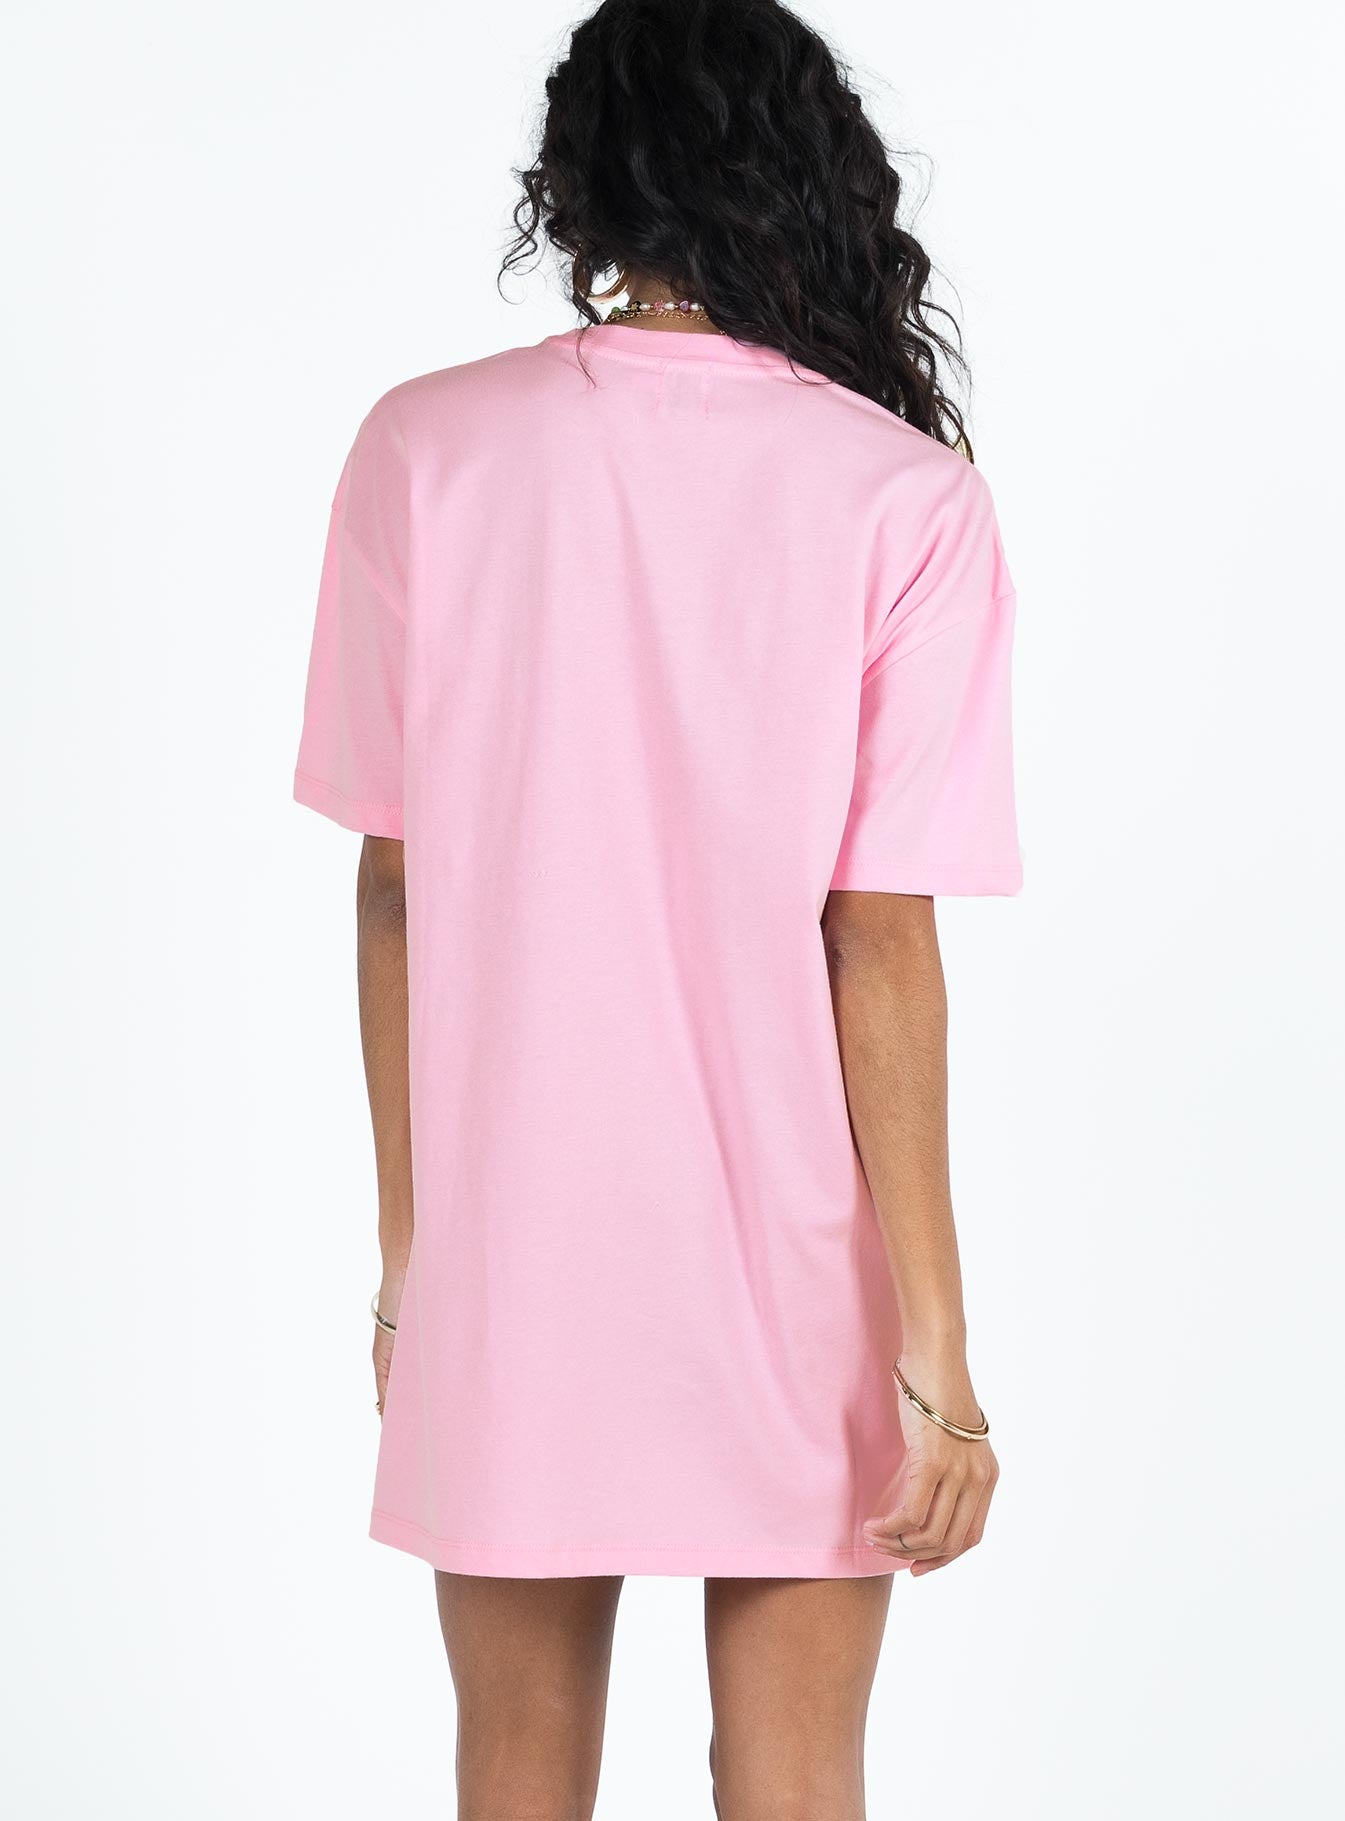 Margarita Shirt Dress Pink